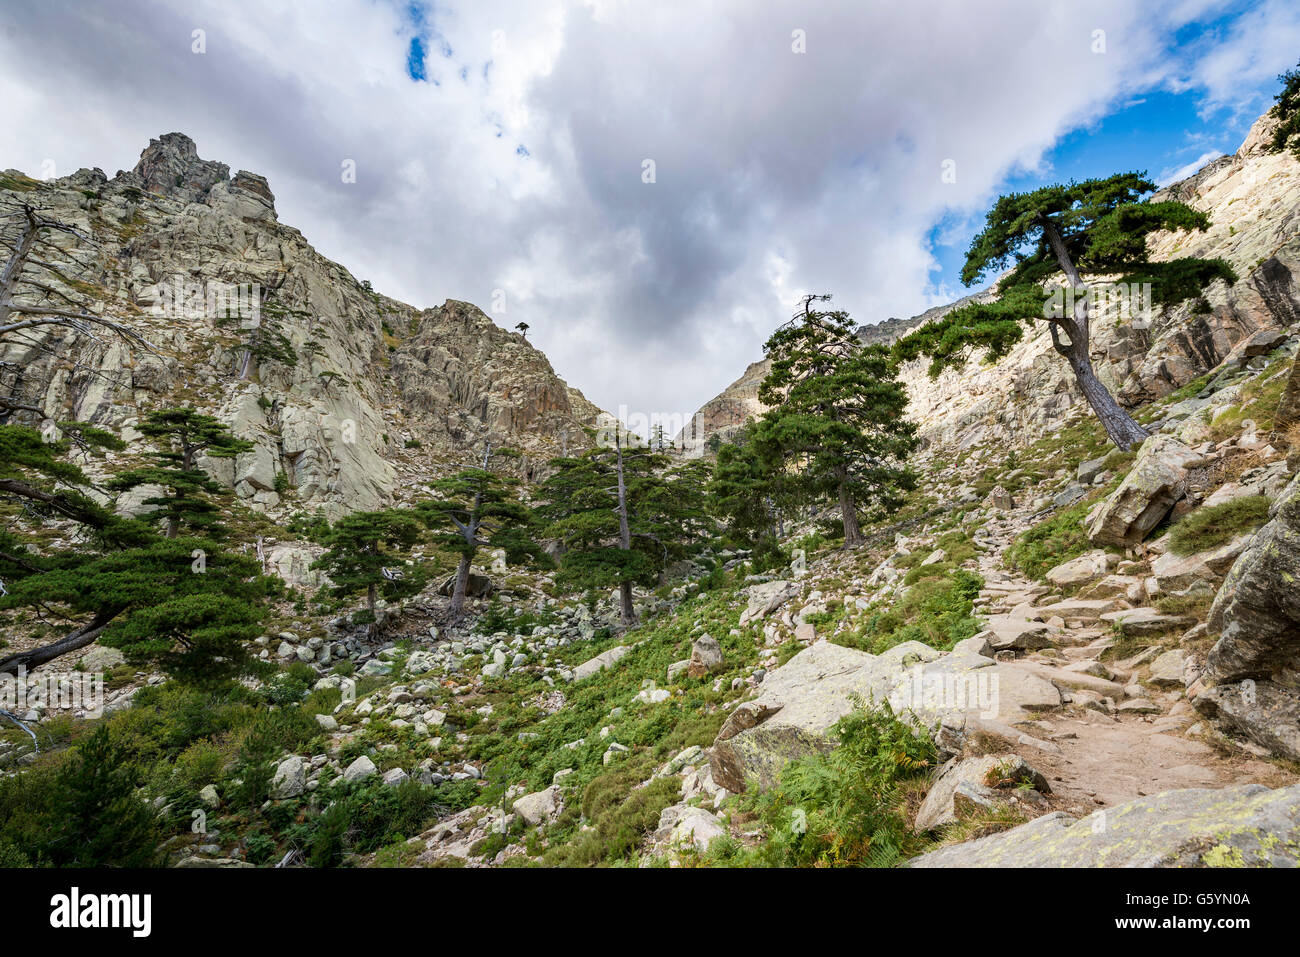 Mountainous landscape in Golo Valley, Nature Park of Corsica, Parc naturel régional de Corse, Corsica, France Stock Photo